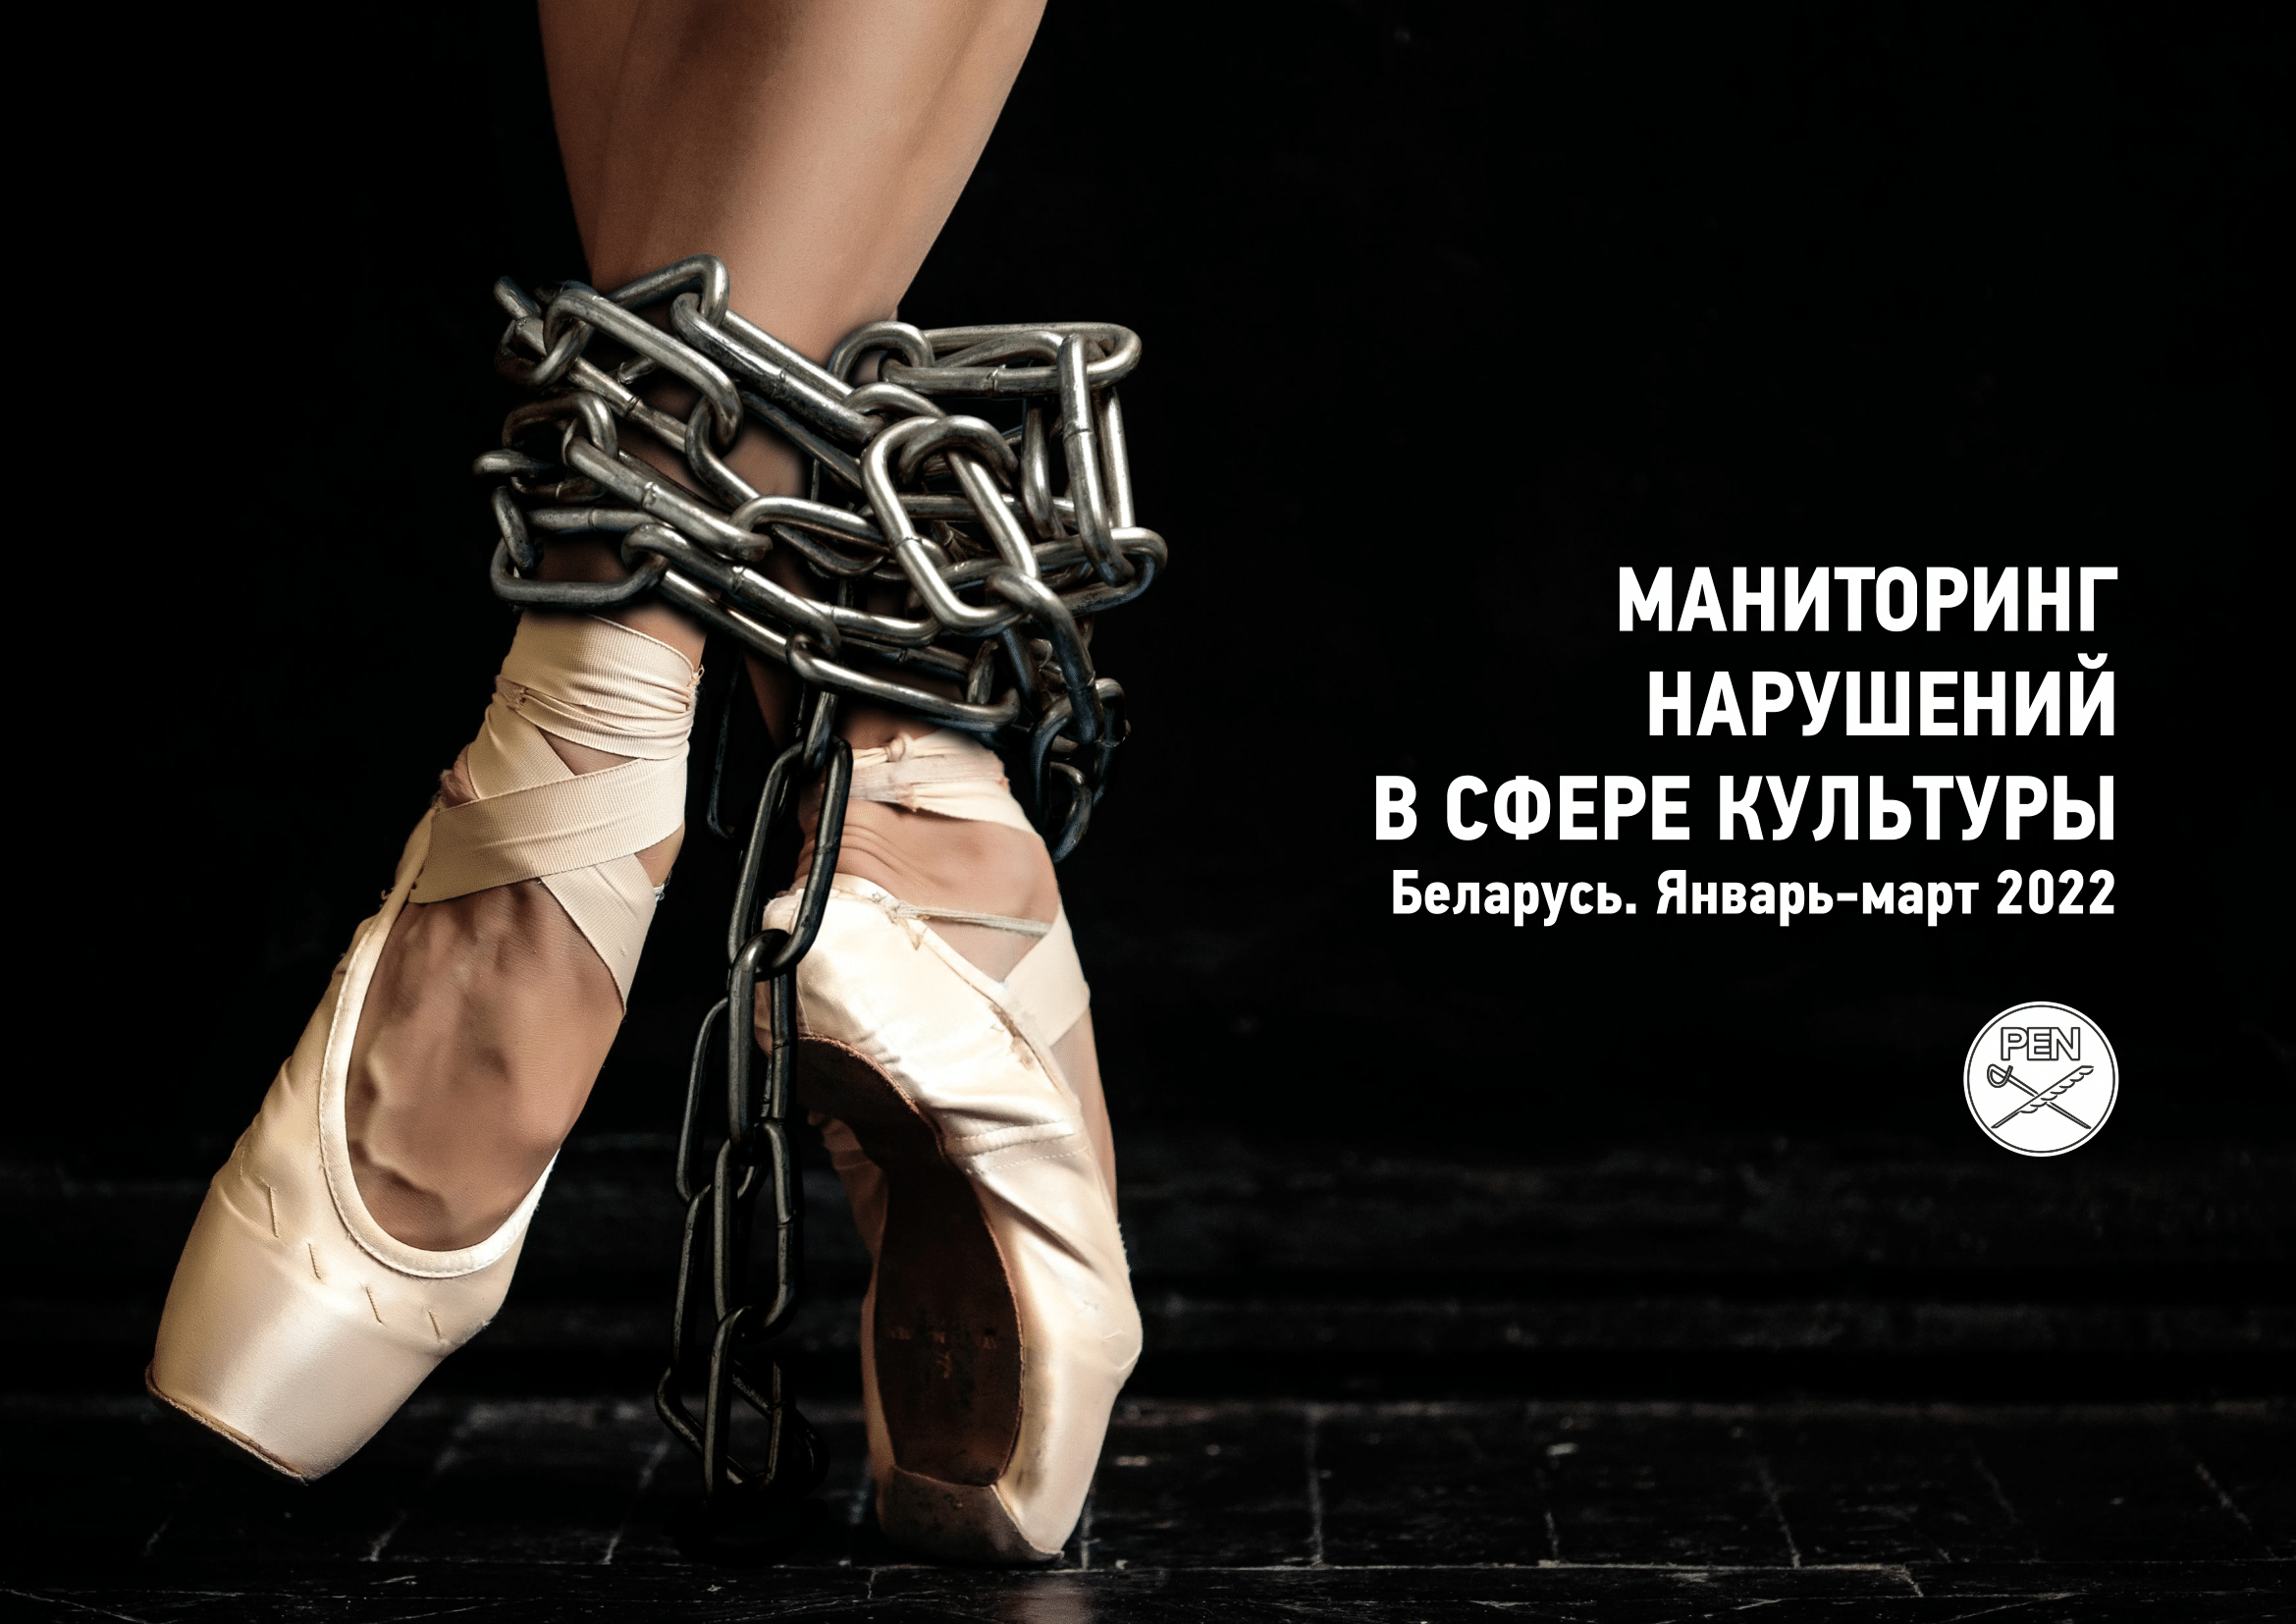 (РУС) Мониторинг нарушений культурных прав и прав человека в отношении деятелей культуры. Беларусь, январь – март 2022 года